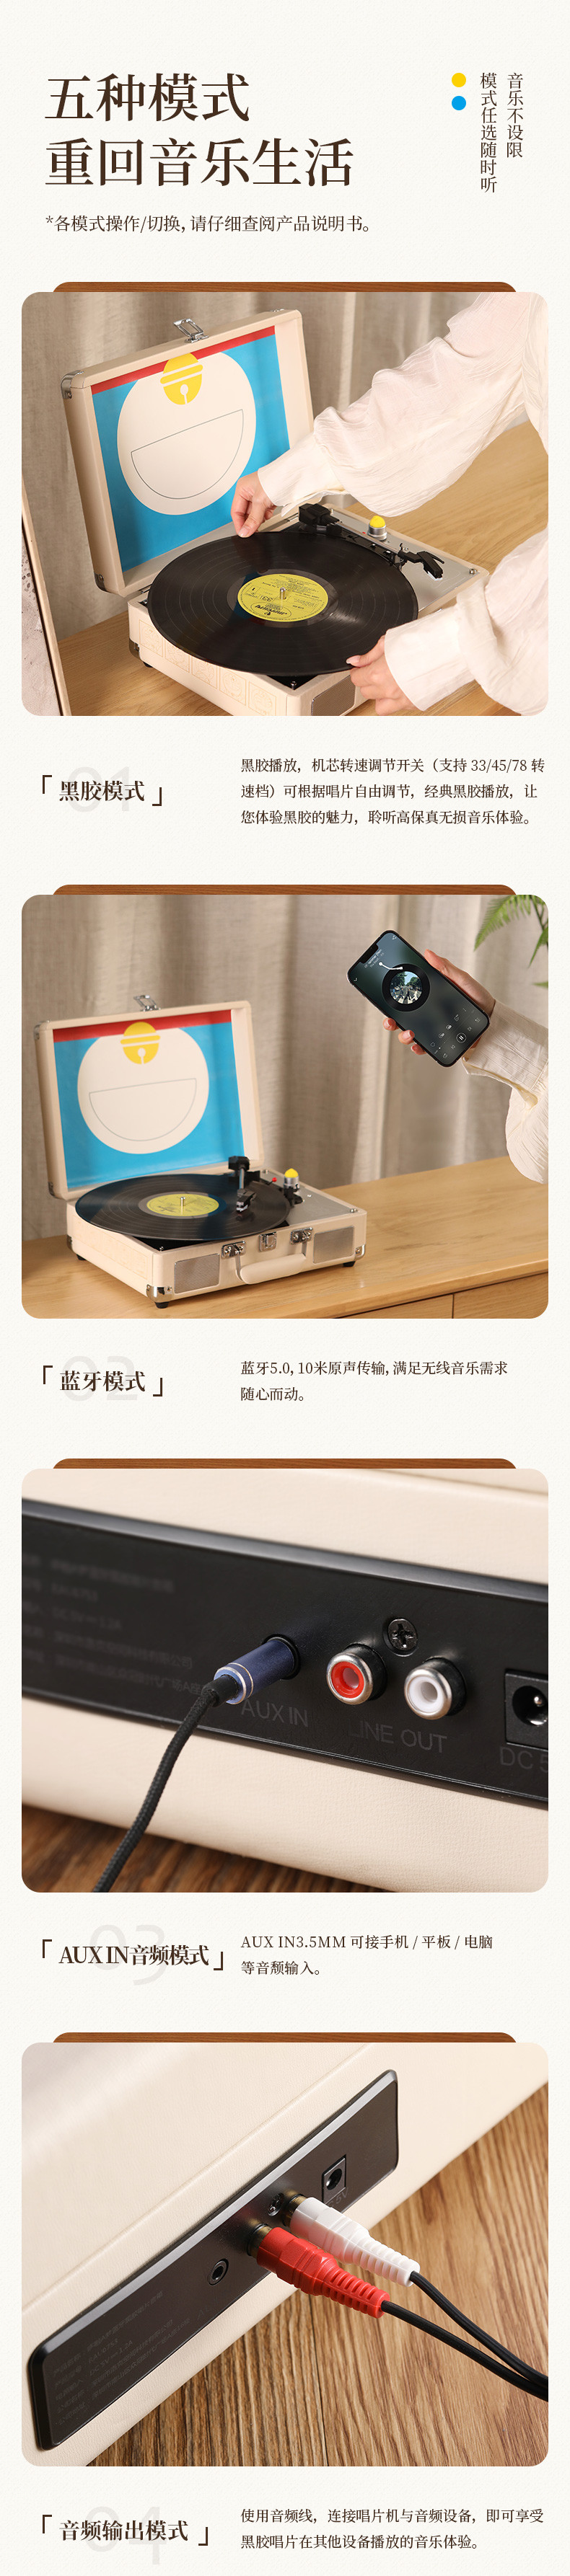 洛克 哆啦A梦 复古黑胶蓝牙唱片机